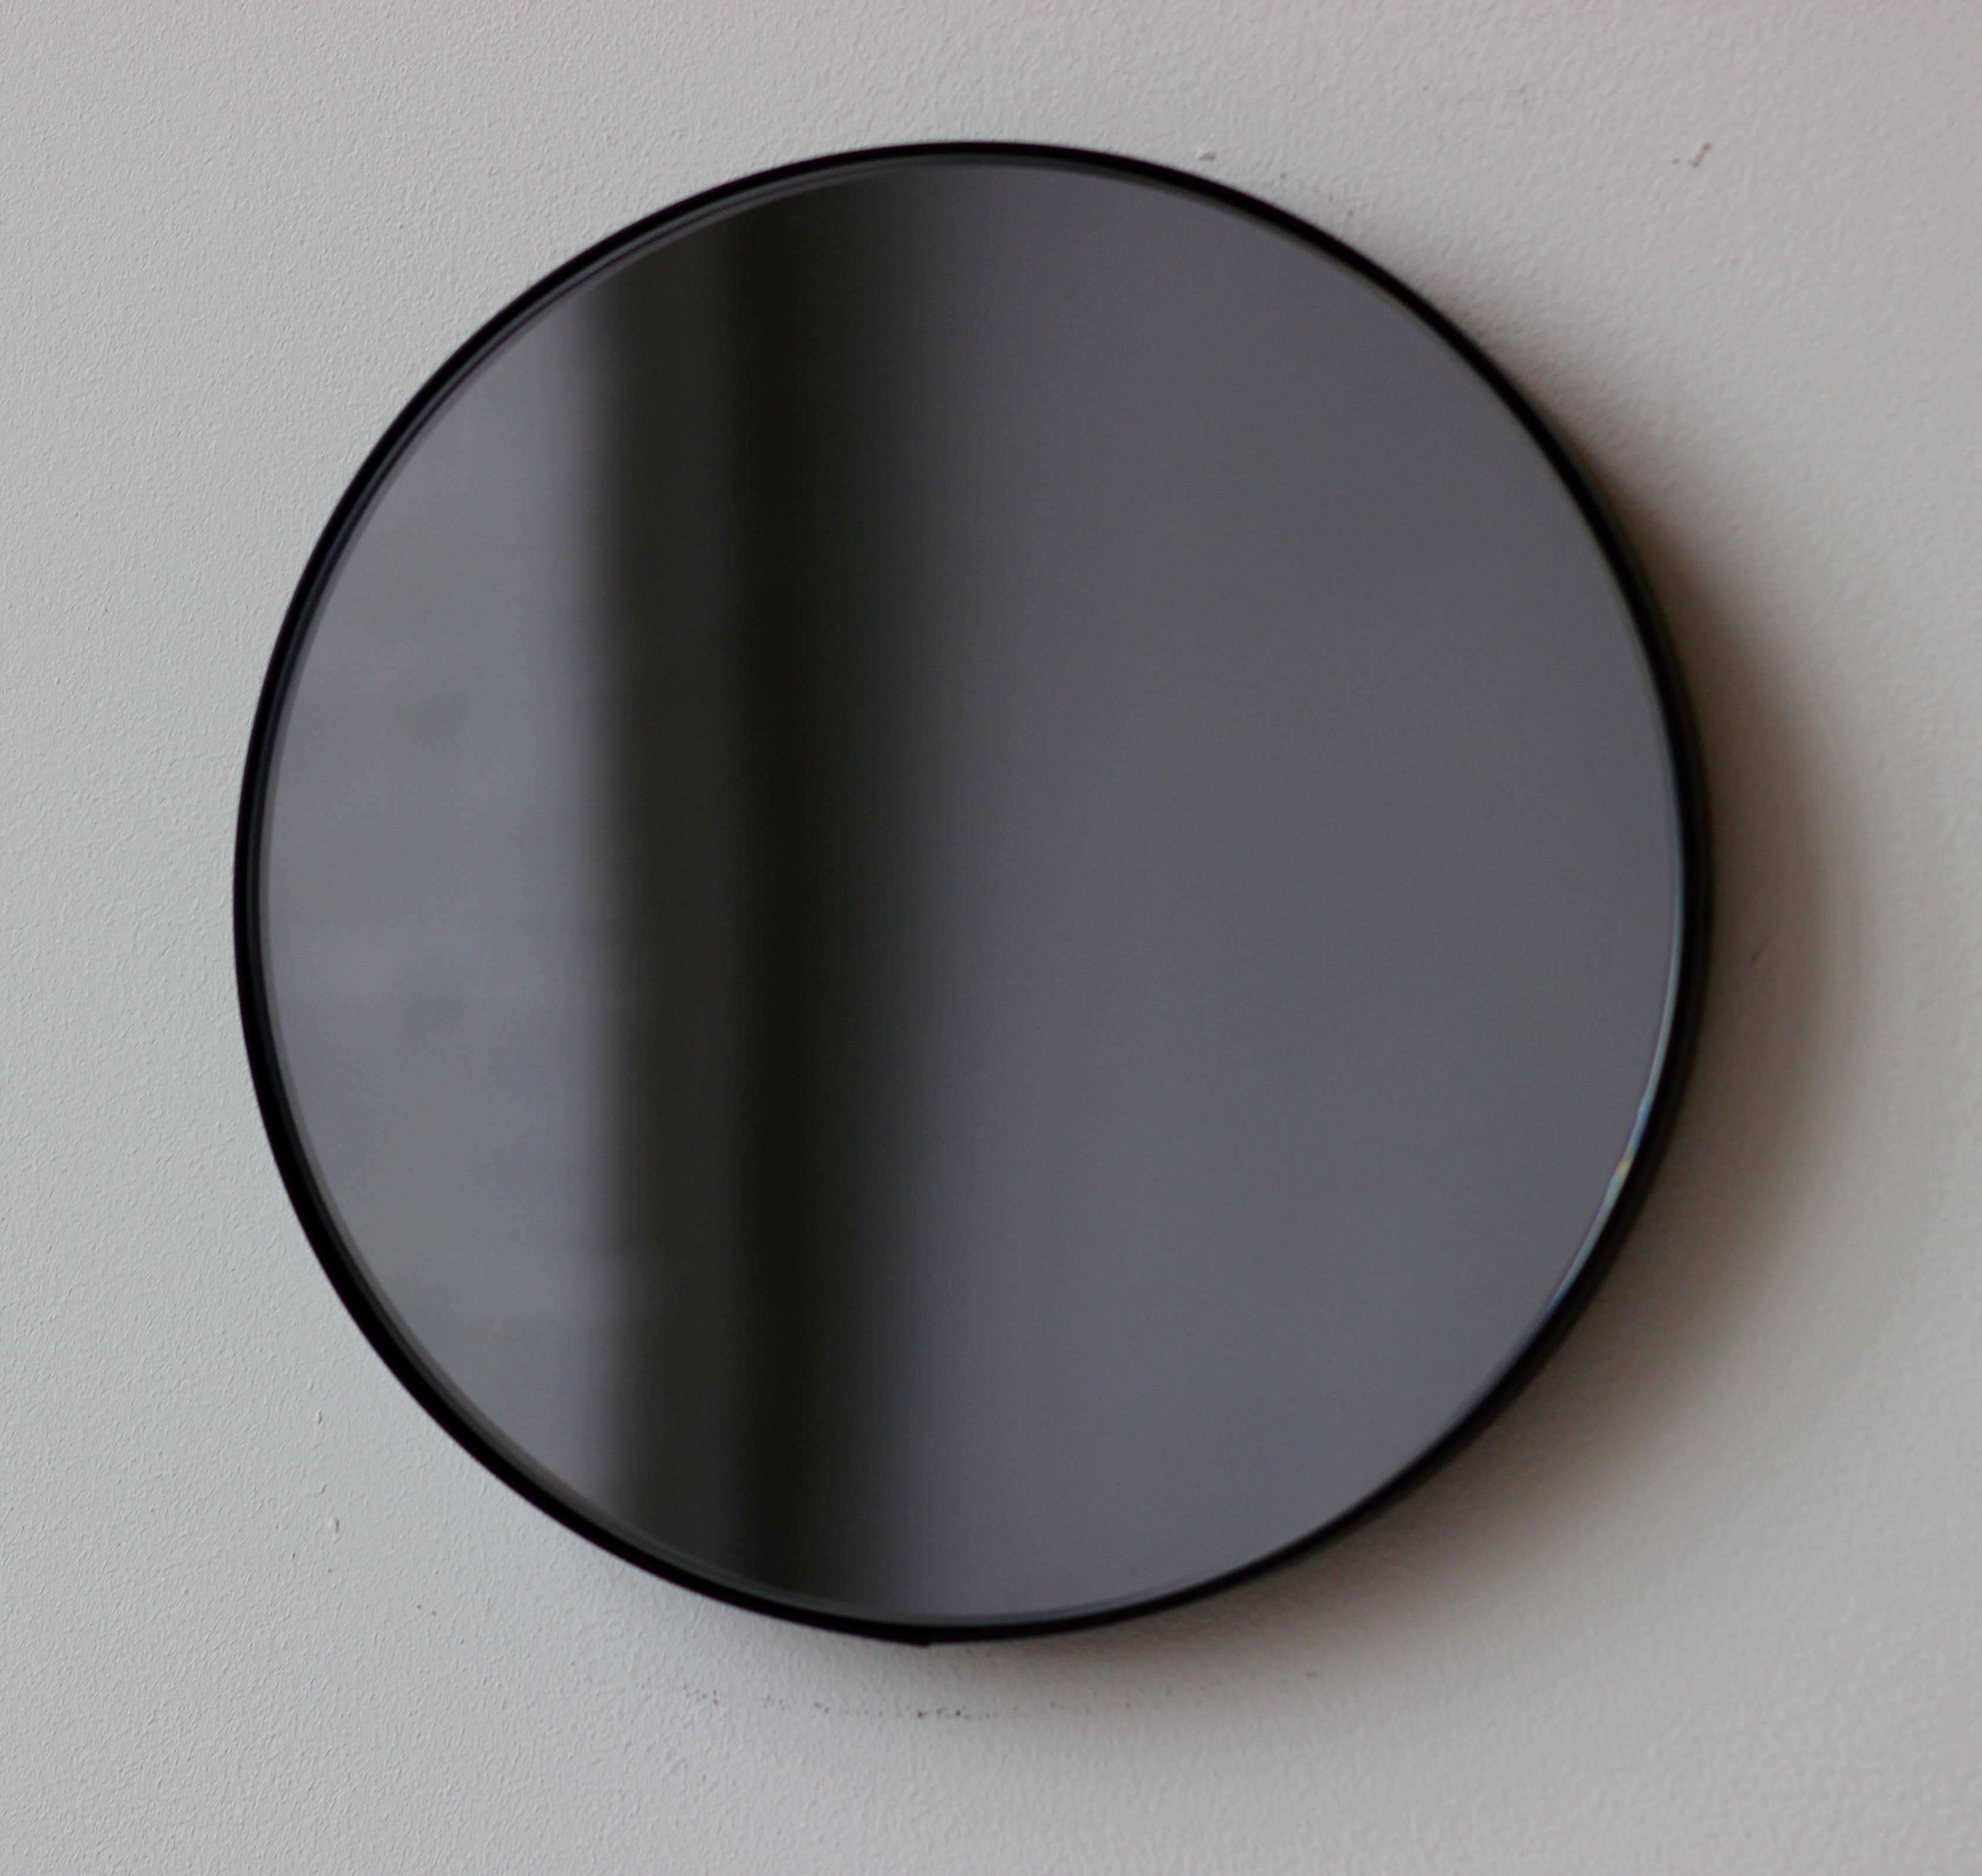 Miroir rond contemporain Orbis™ teinté noir avec un cadre minimaliste en aluminium peint par poudrage noir. Conçu et fabriqué à la main à Londres, au Royaume-Uni.

Les miroirs de taille moyenne, grande et extra-large (60, 80 et 100 cm) sont équipés